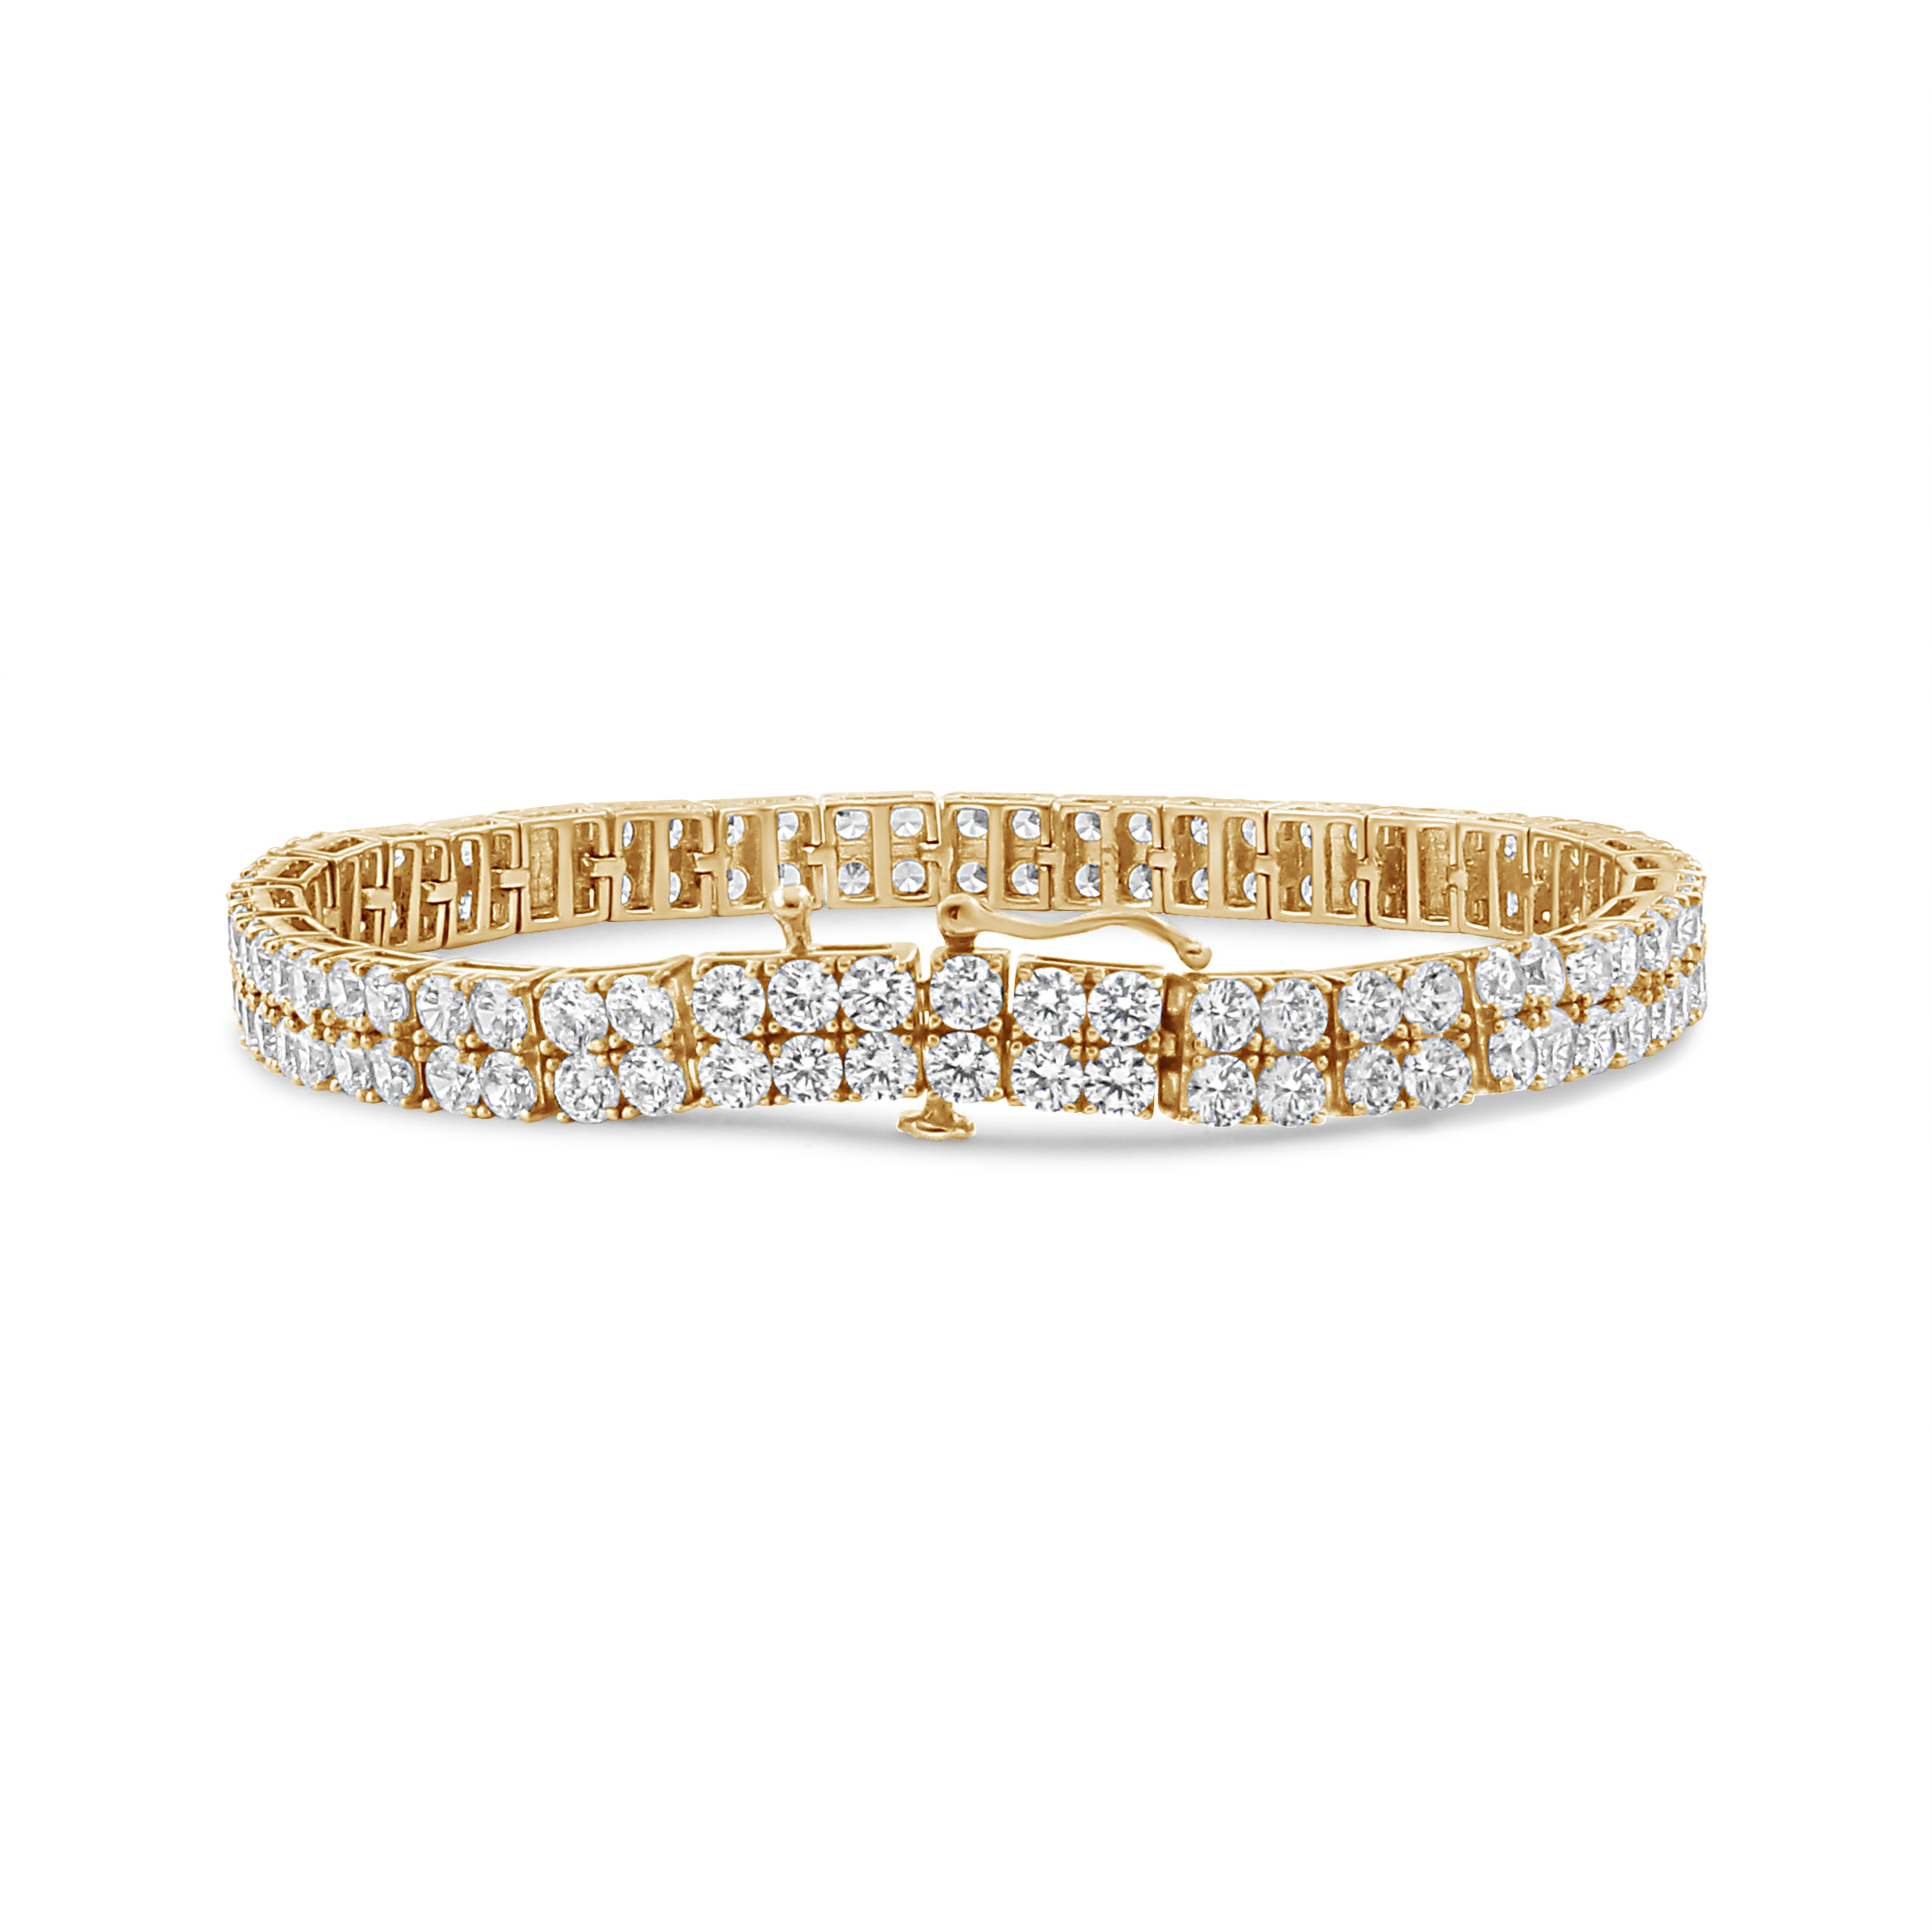 Avec sa double rangée de brillants, ce bracelet de tennis en or jaune 14 carats est une symphonie d'étincelles et de sophistication. Chaque diamant rond de taille brillante est méticuleusement serti dans une étreinte à quatre branches, totalisant